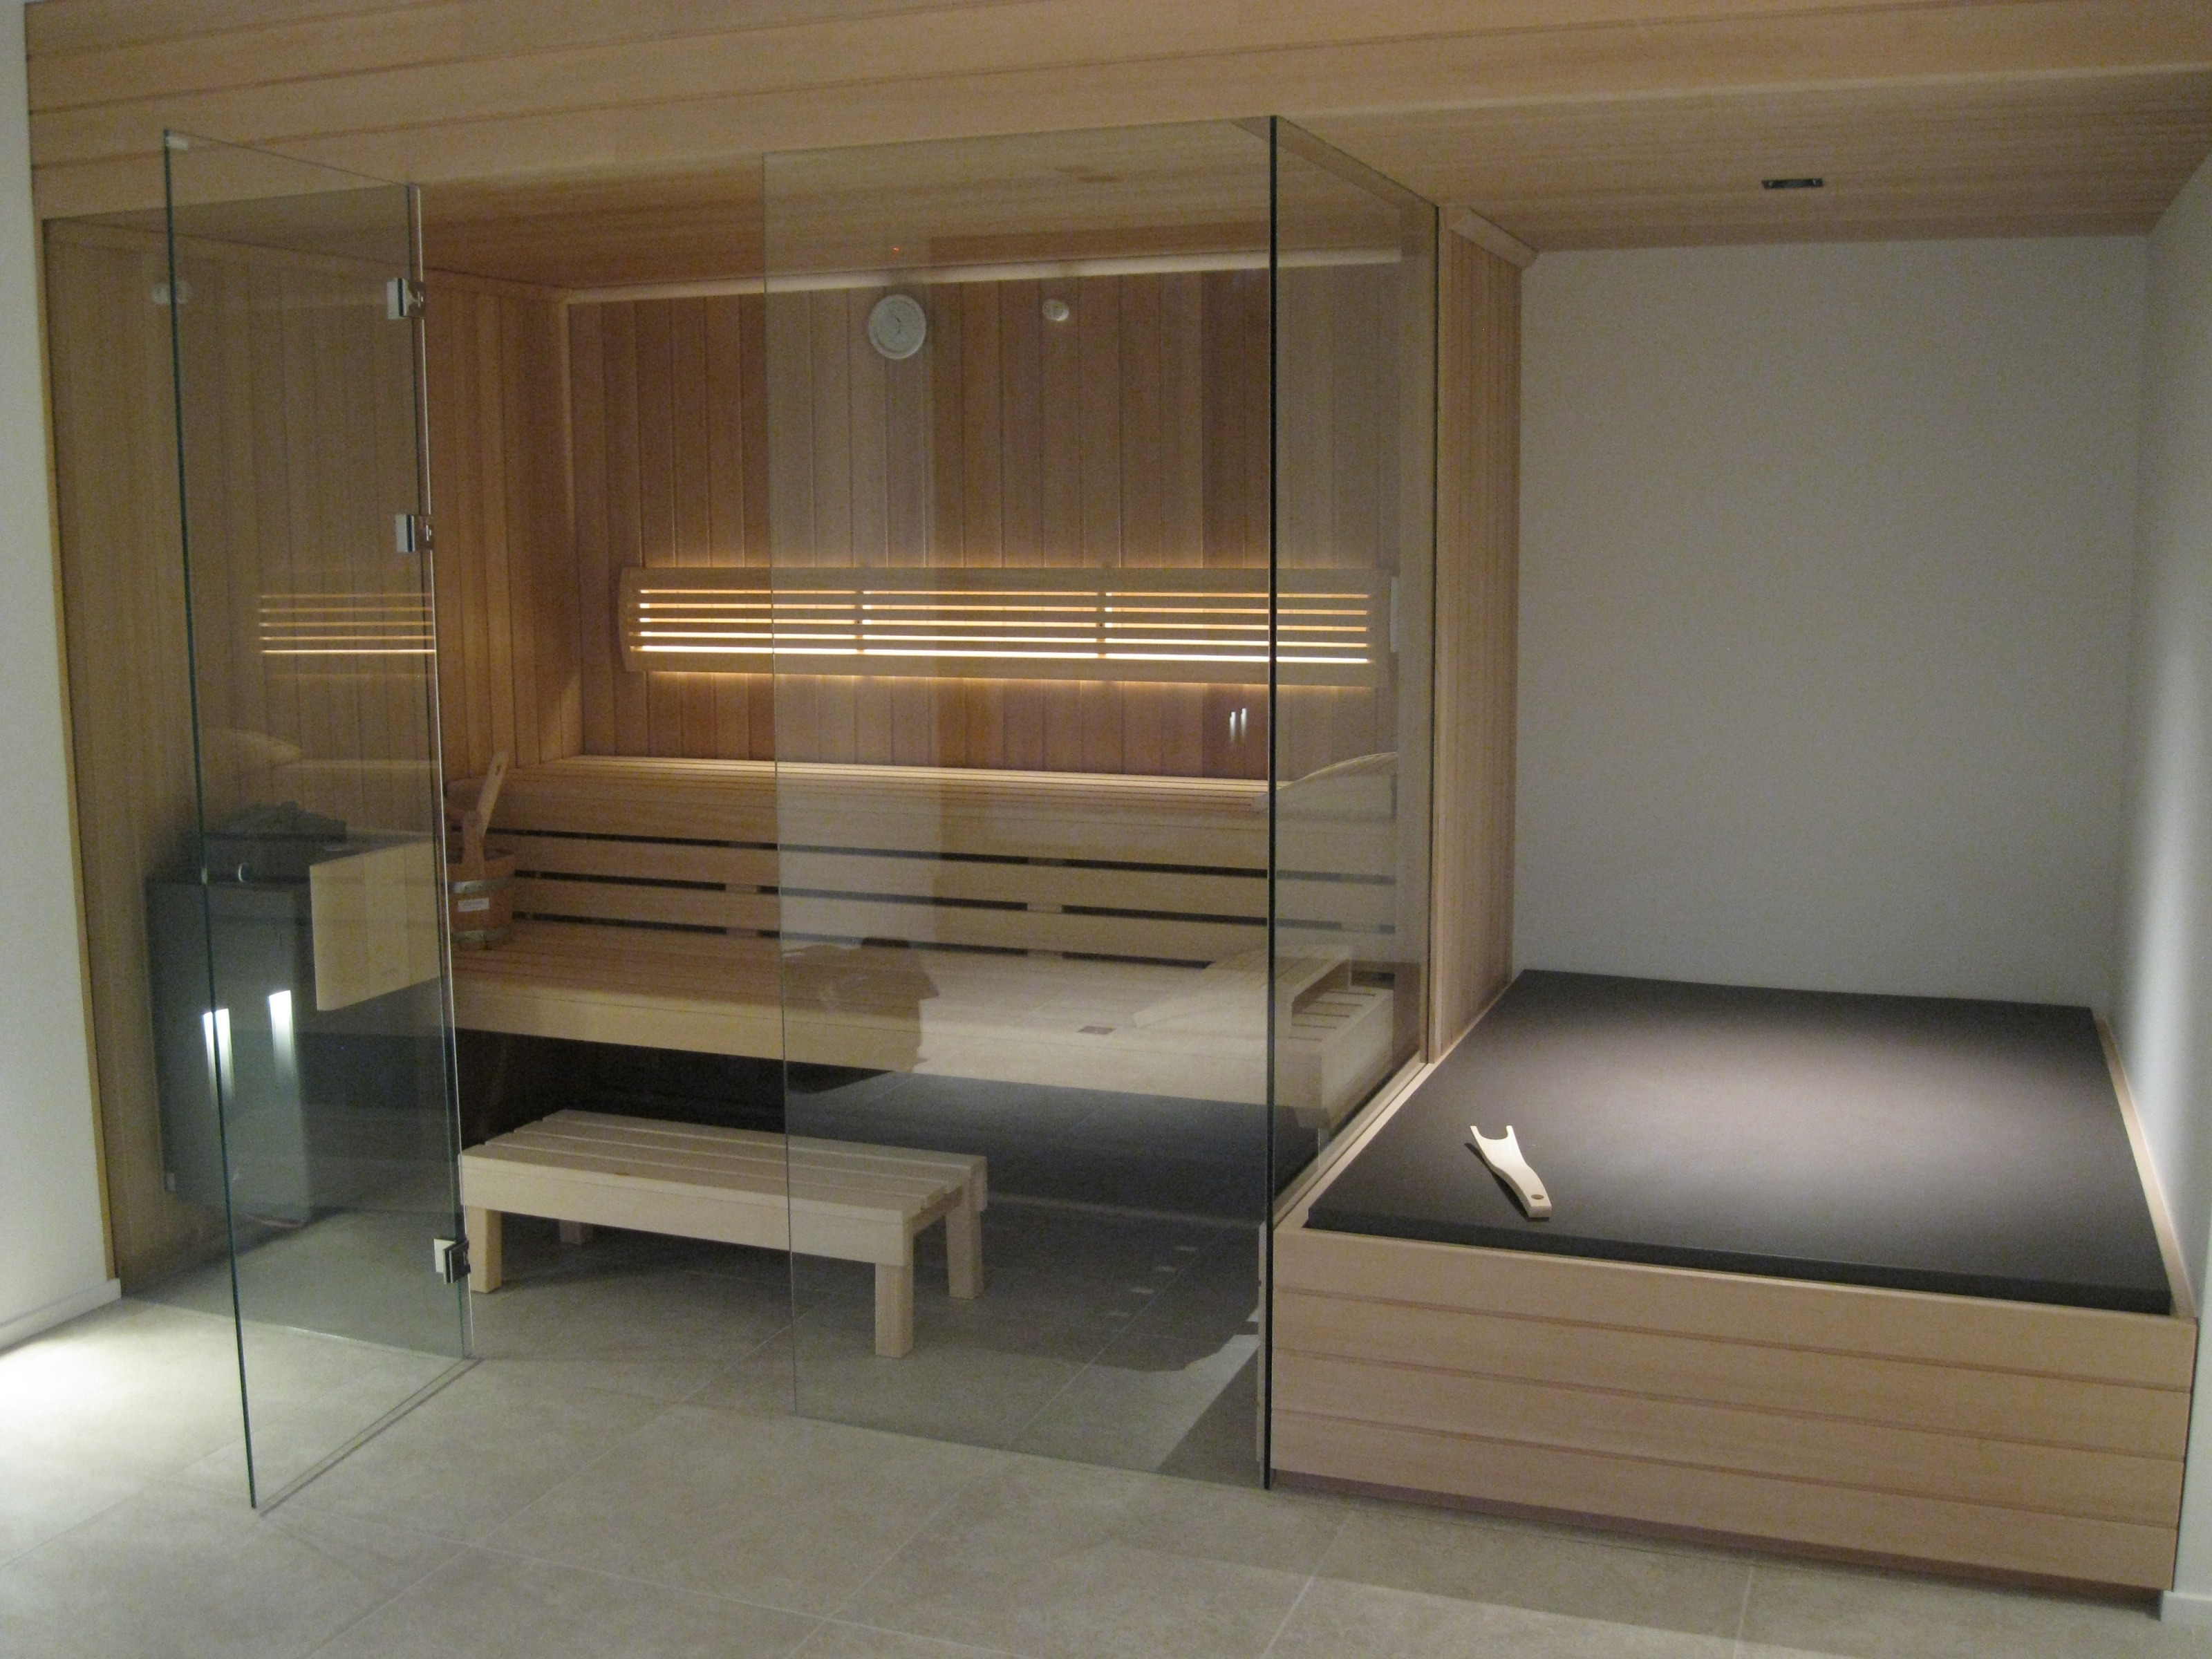 sauna-op-maat-hanolux-antwerpen-turnhout-klafs-3-kopie.jpg